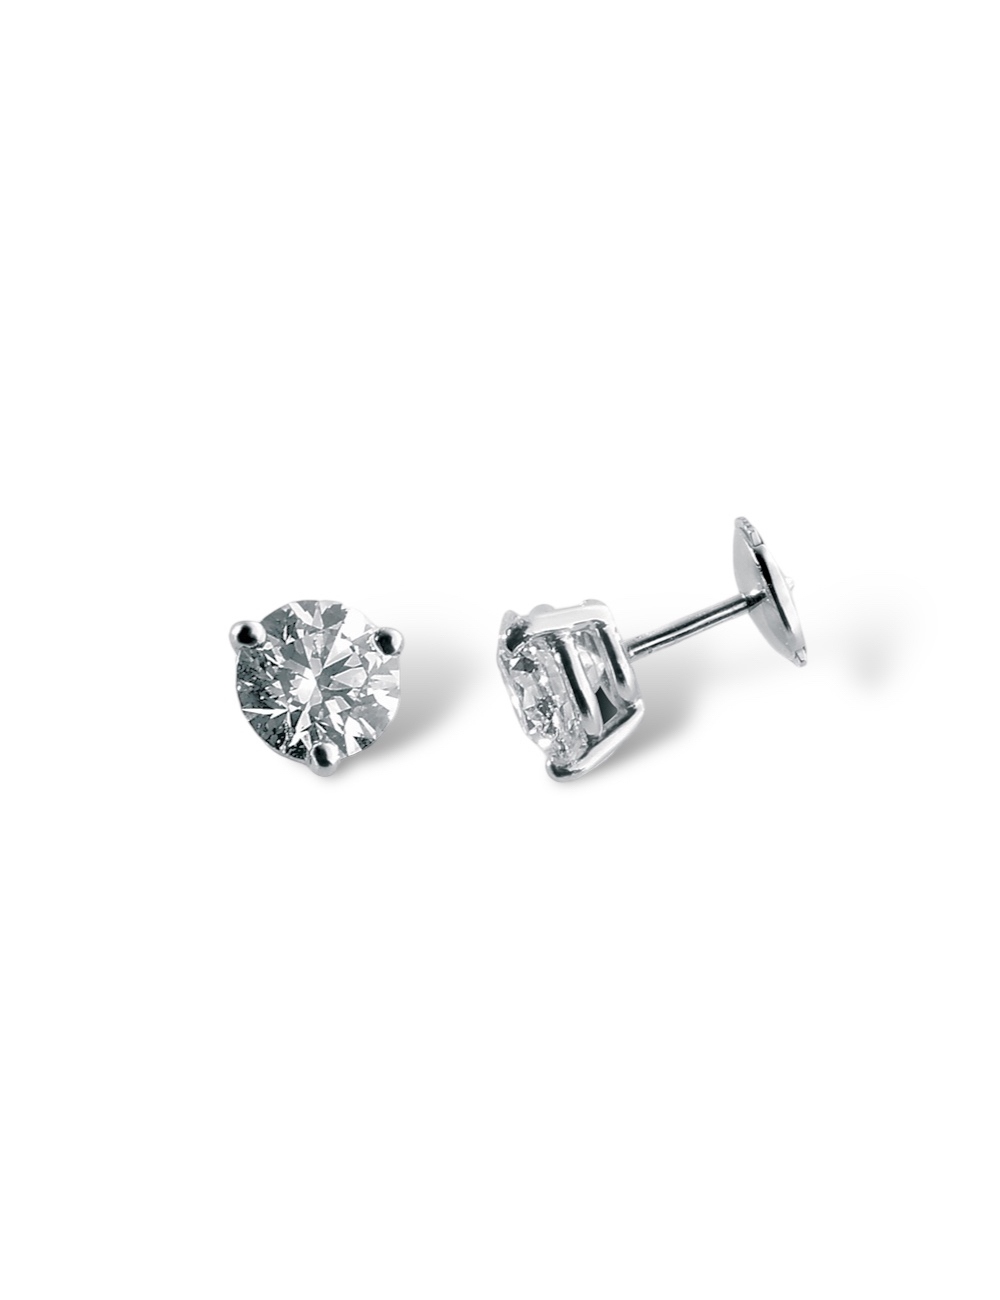 0.15 carat diamond earrings set in white gold, elegant asymmetric design for modern sophistication.